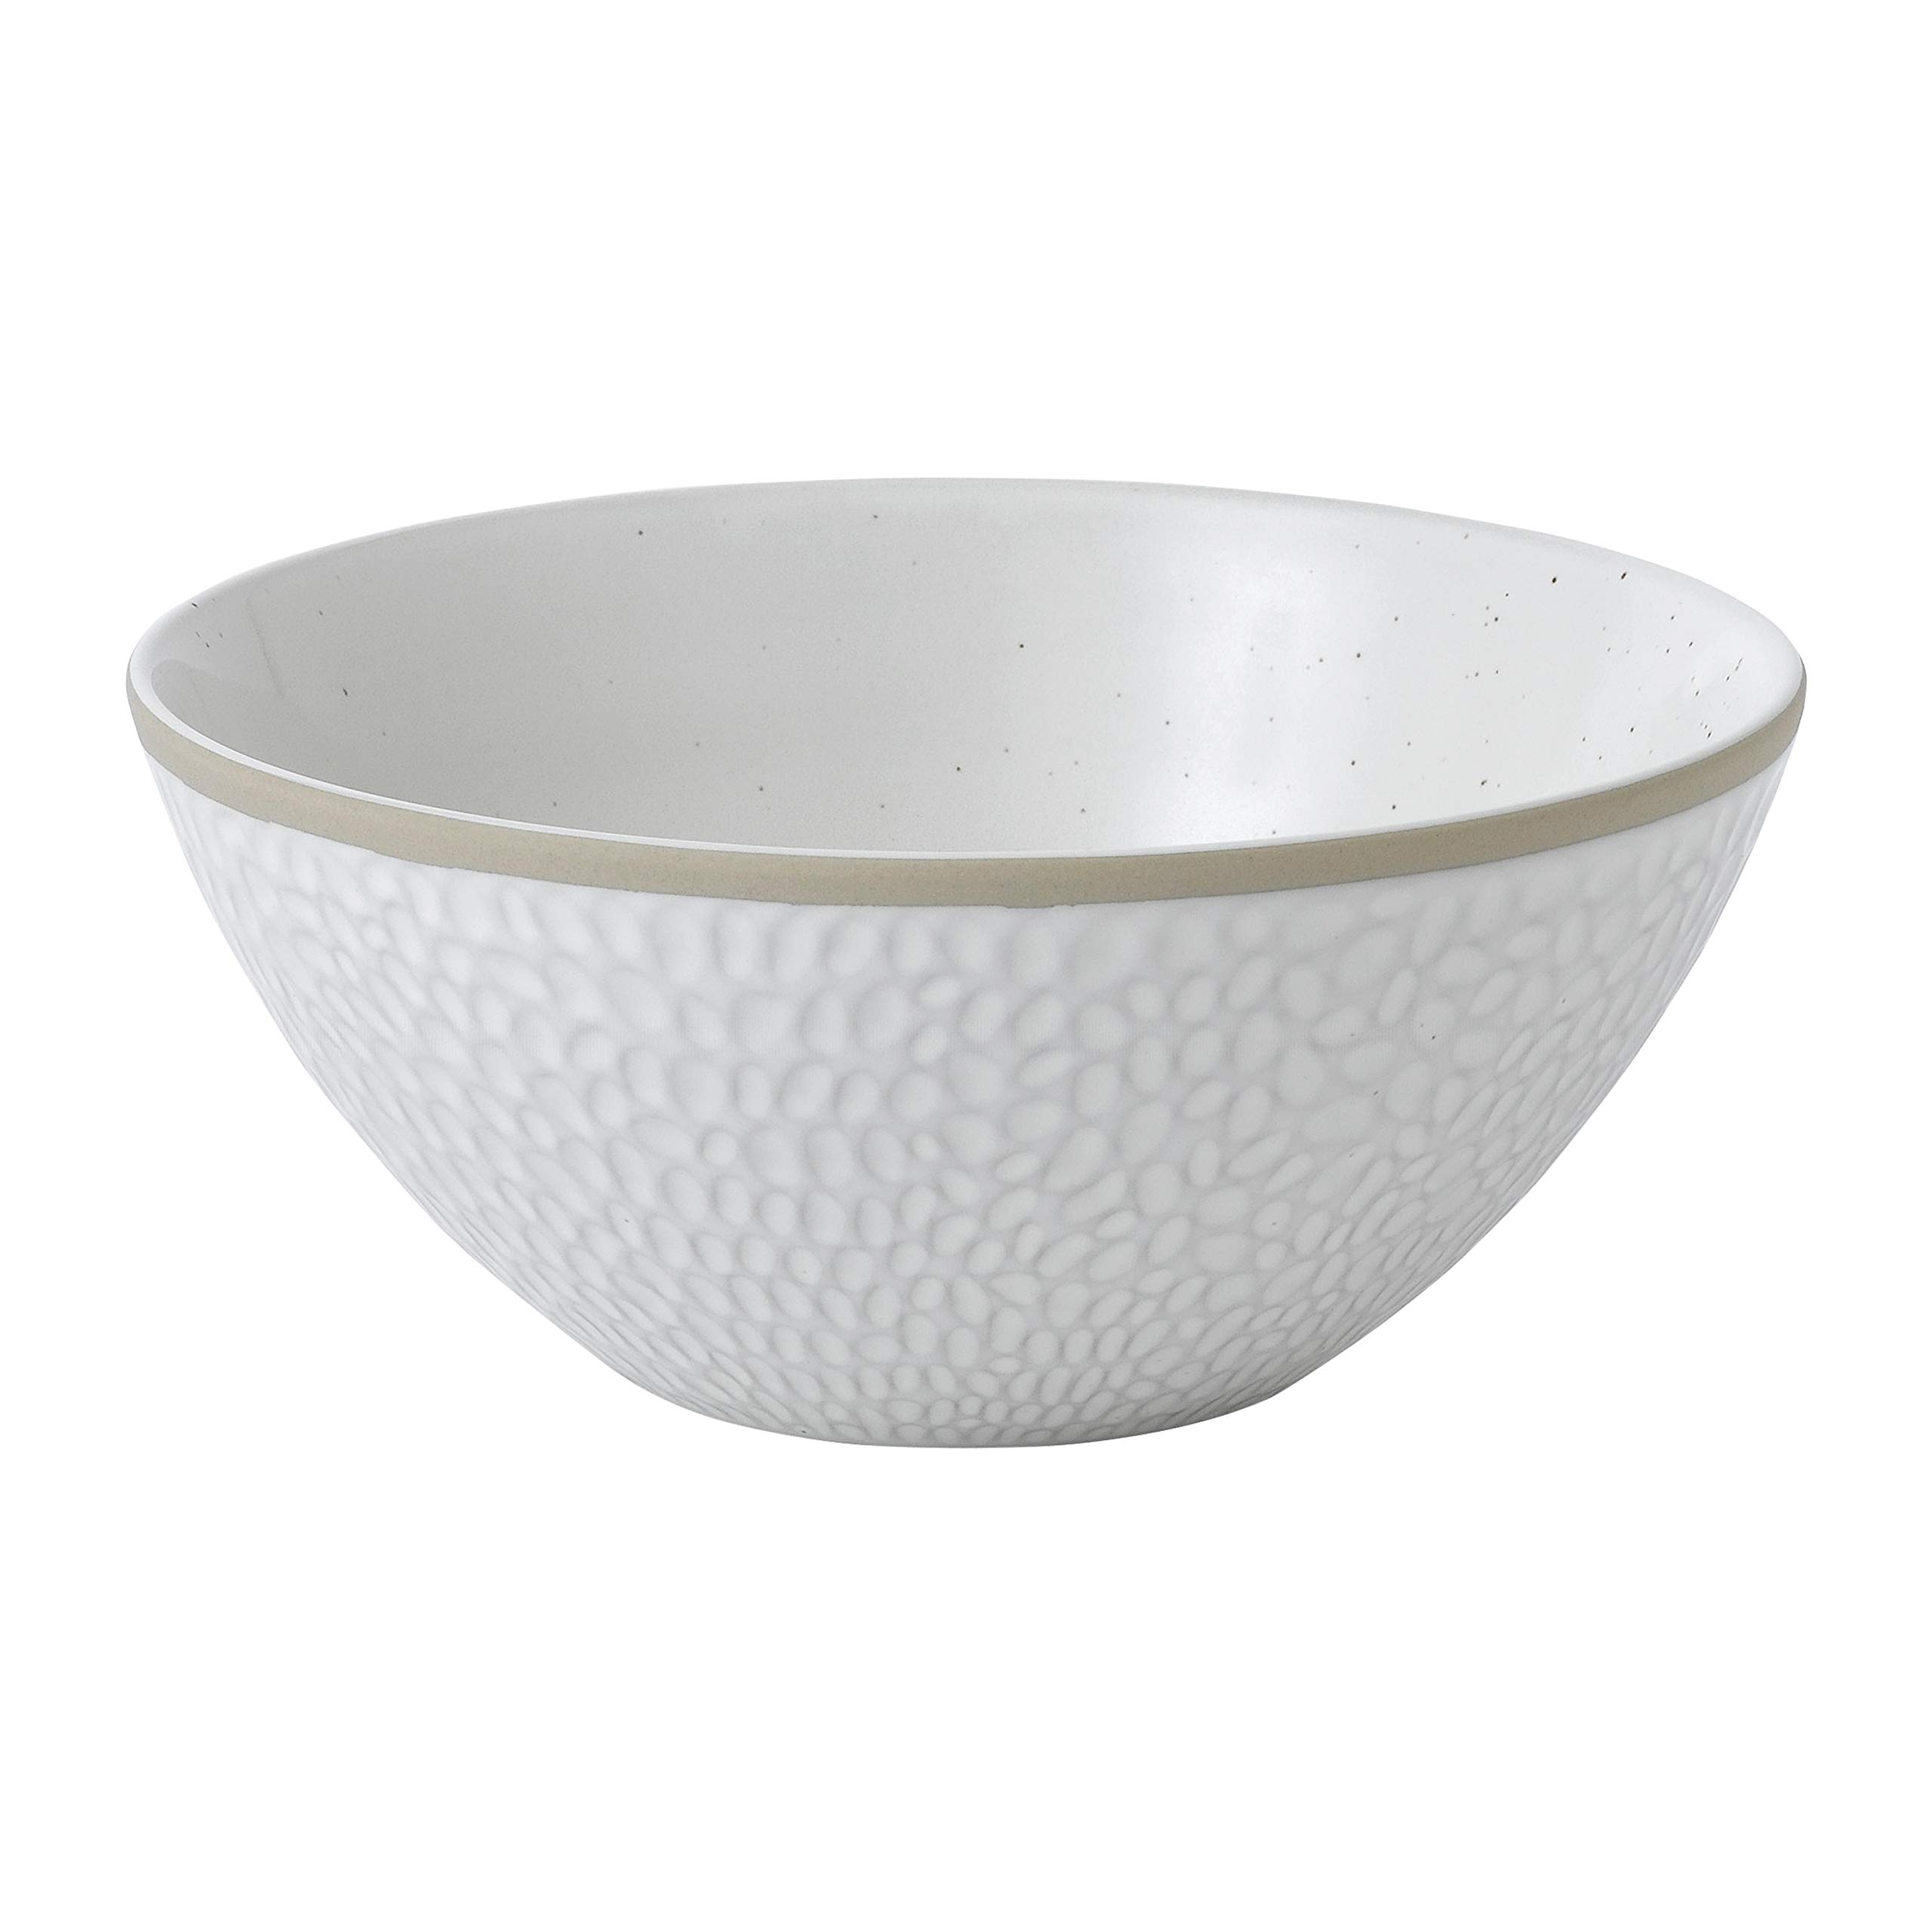 Royal Doulton Exclusively for Gordon Ramsay Maze Grill White Bowls, 6", White, Set of 4